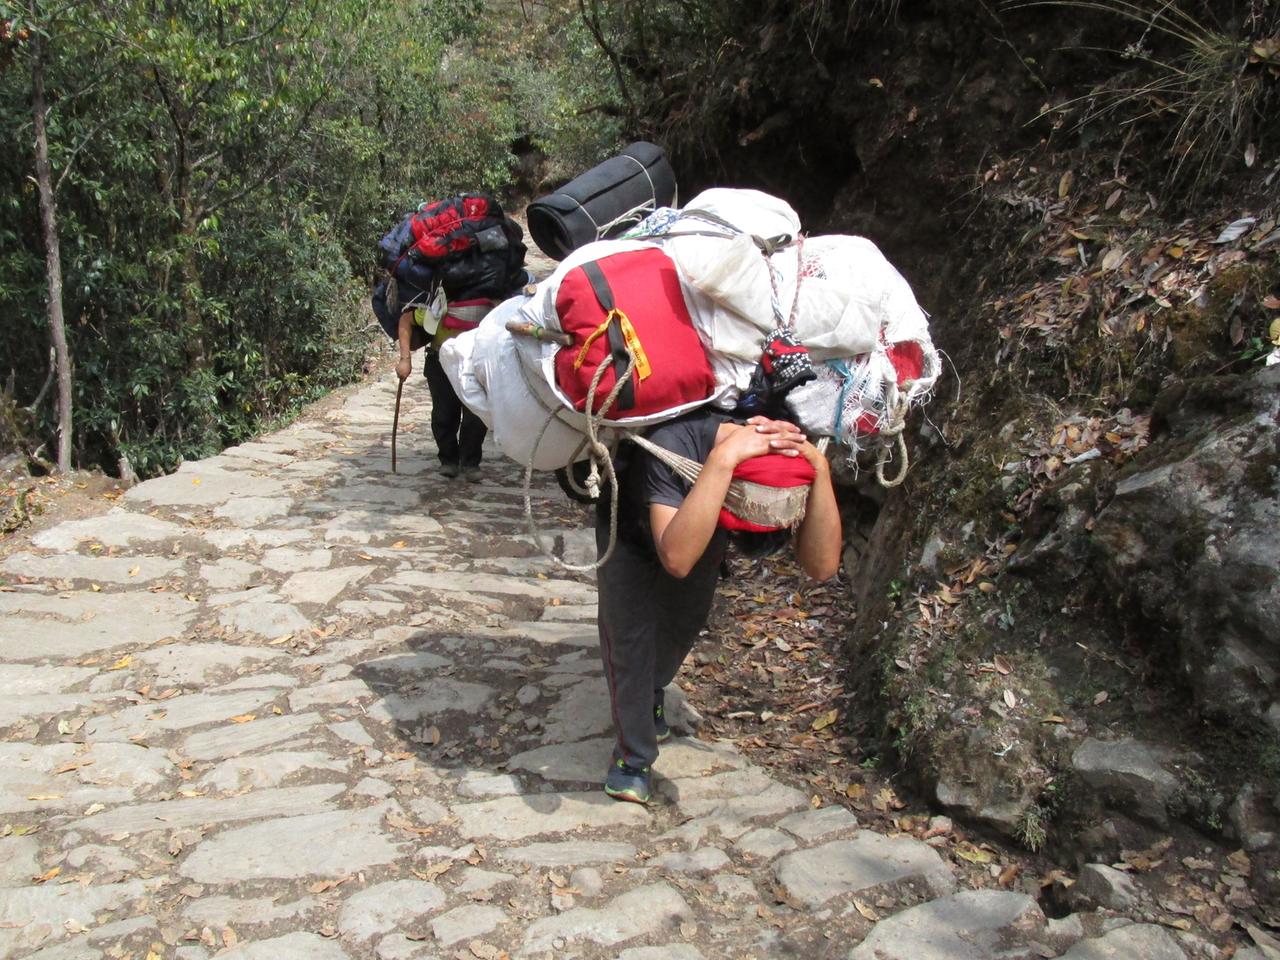 Träger auf dem Weg nach Namche Bazar, dem Hauptort der Sherpas am Mount Everest Massiv